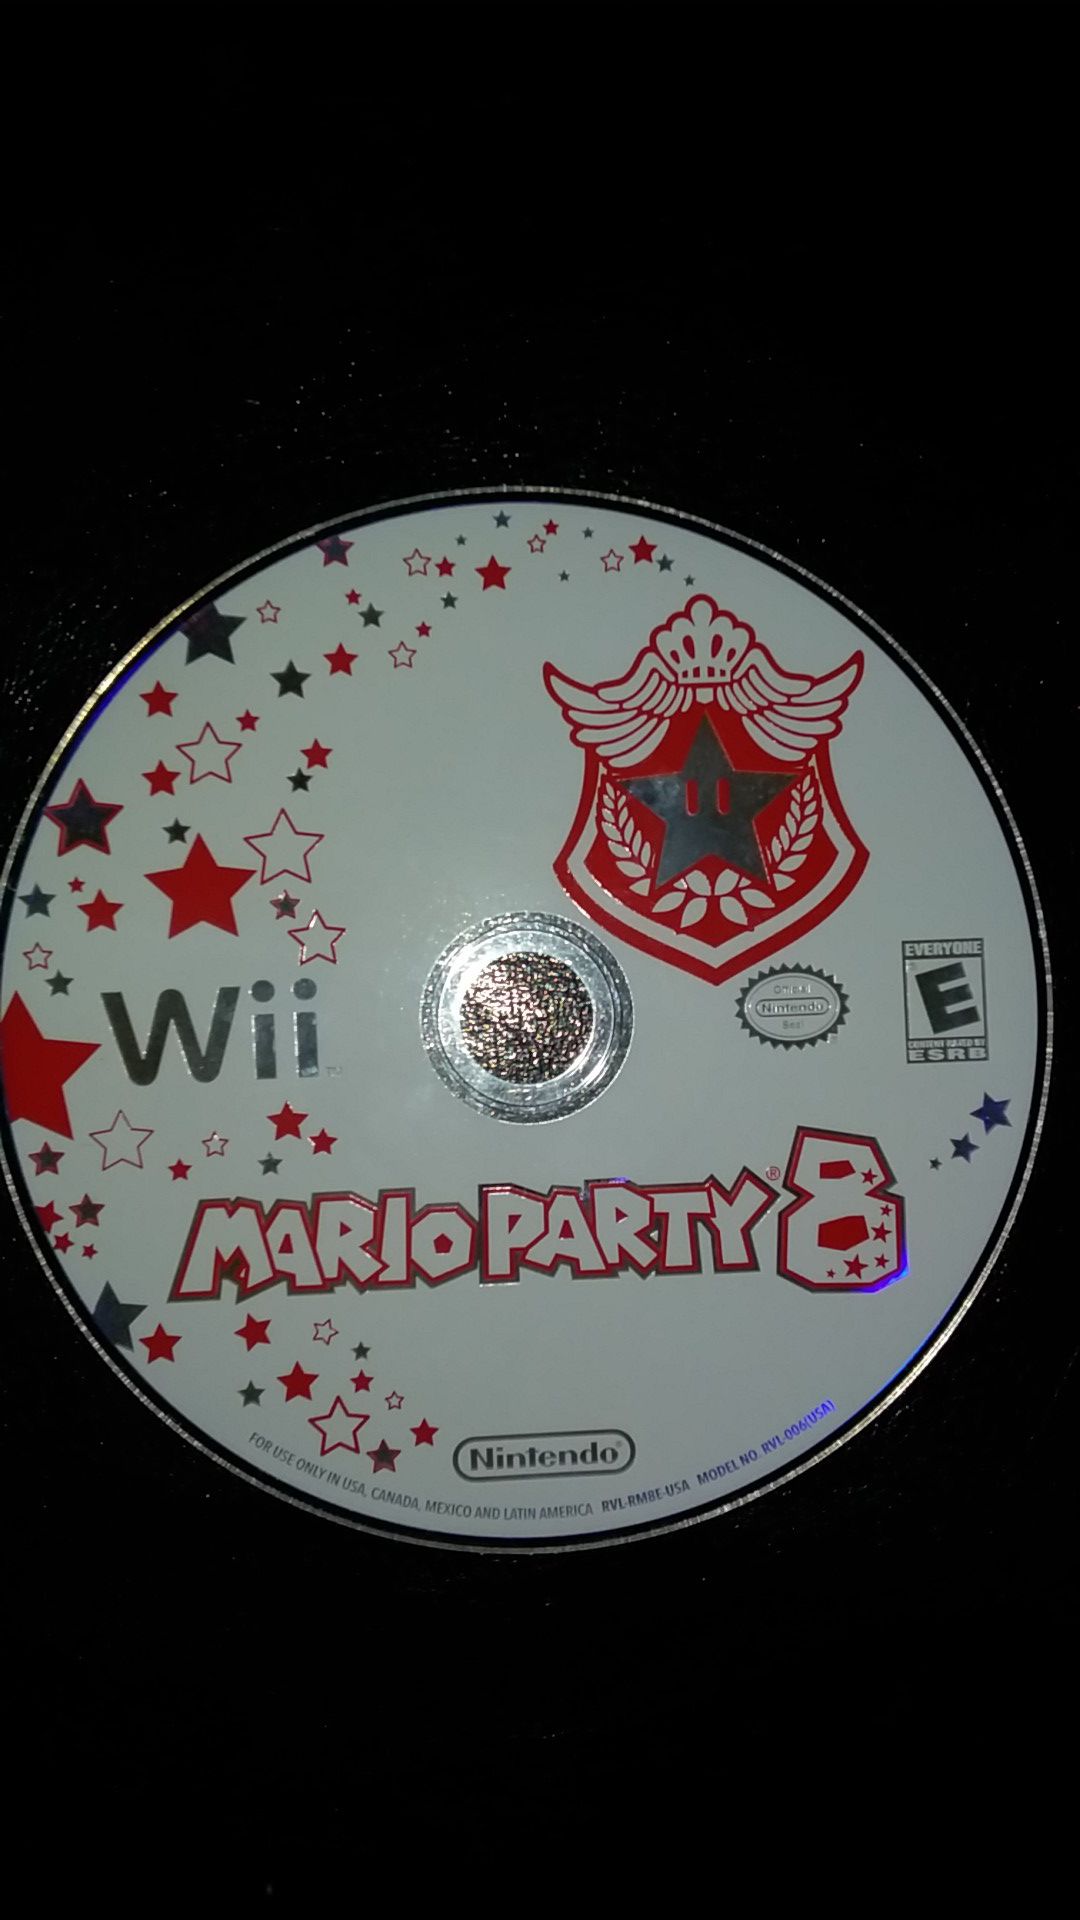 Mario party 8